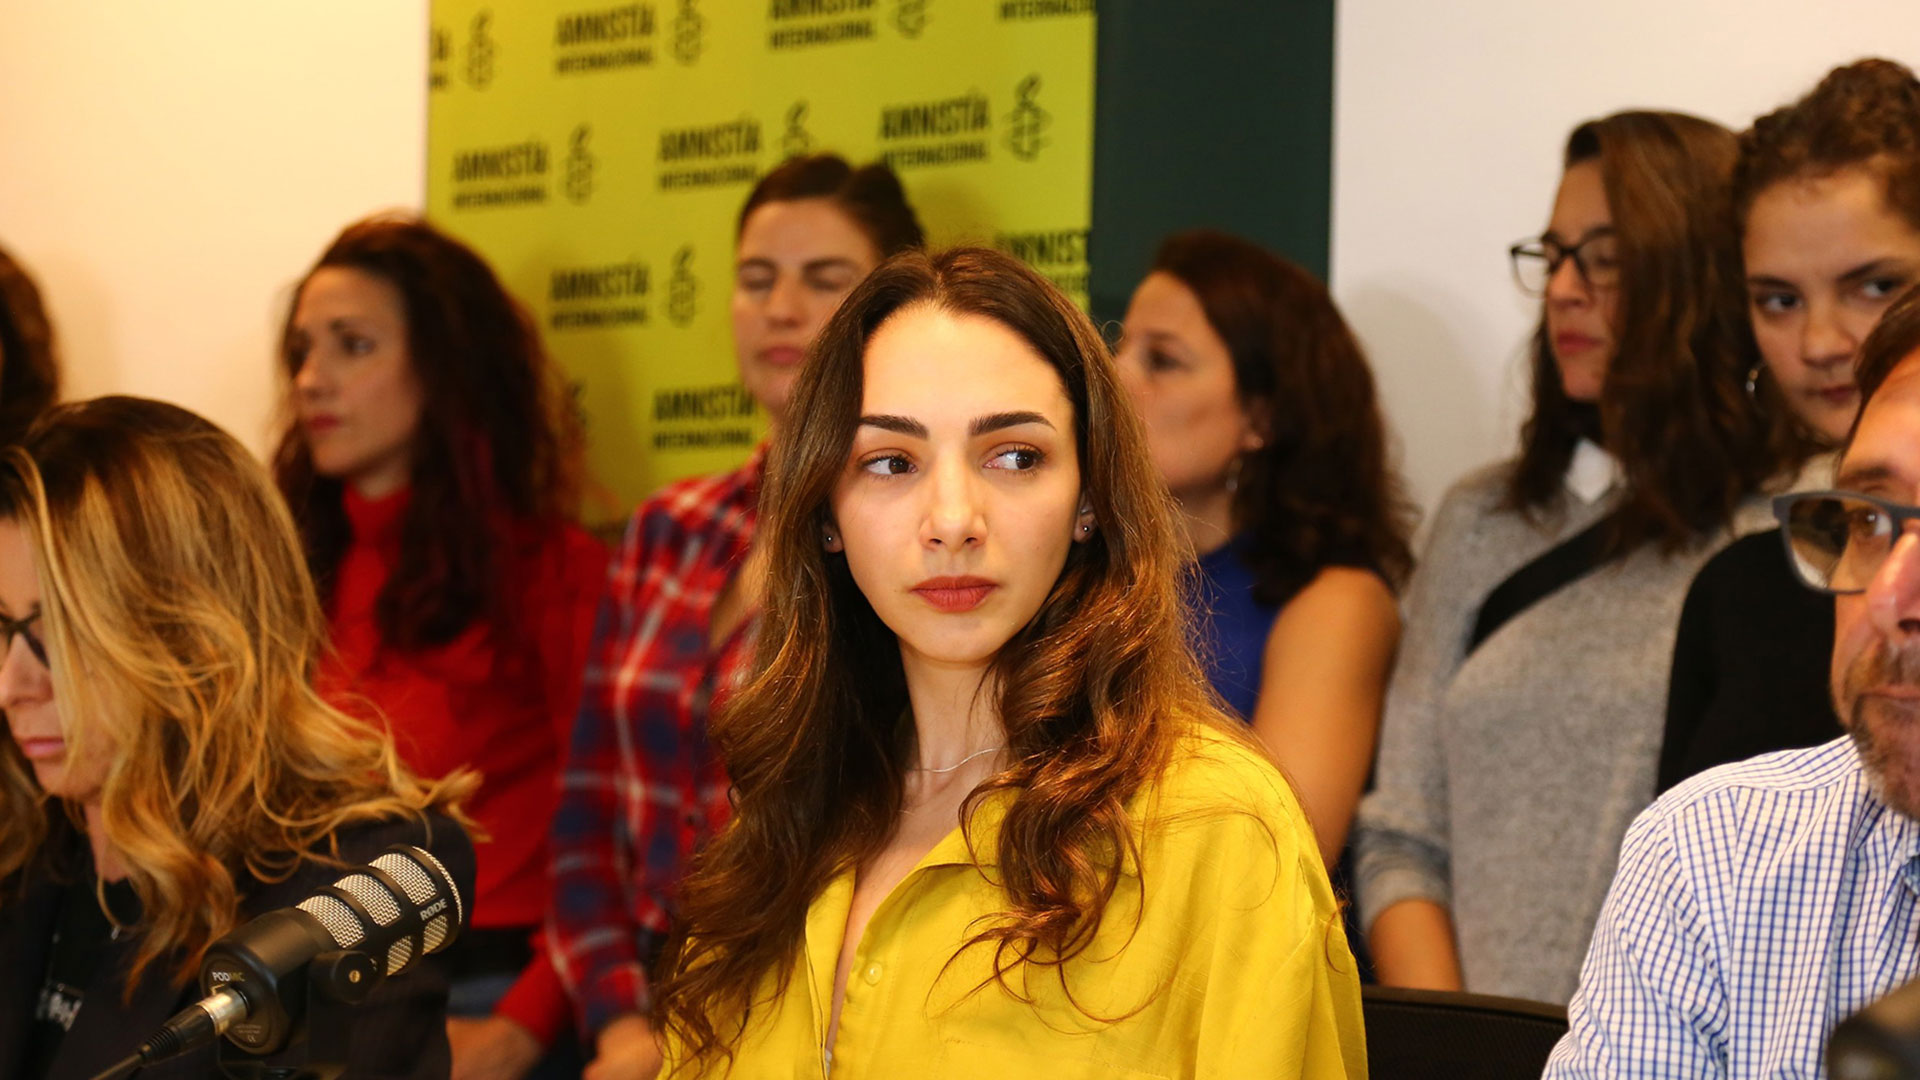 Thelma Fardin en la conferencia en Amnistia Internacional junto a su abogado Martín Arias Duval y su abogada Carla Junqueira (RS Fotos)